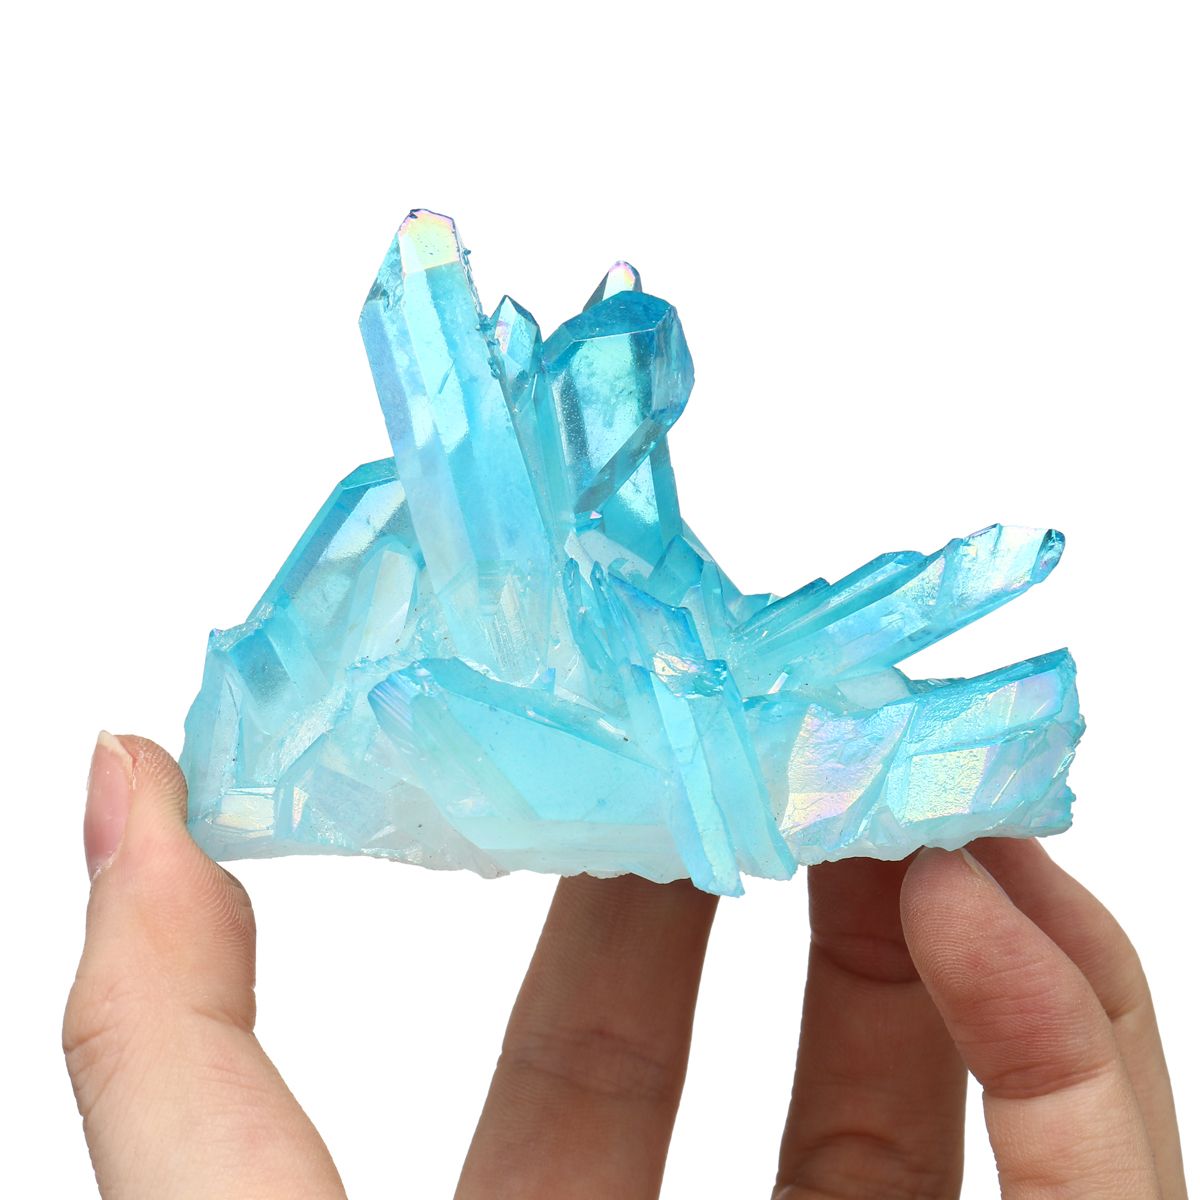 1Pcs-Royal-Blue-Natural-Crystals-Quartz-Cluster-Mineral-Specimen-Healing-Home-Decorations-1555834